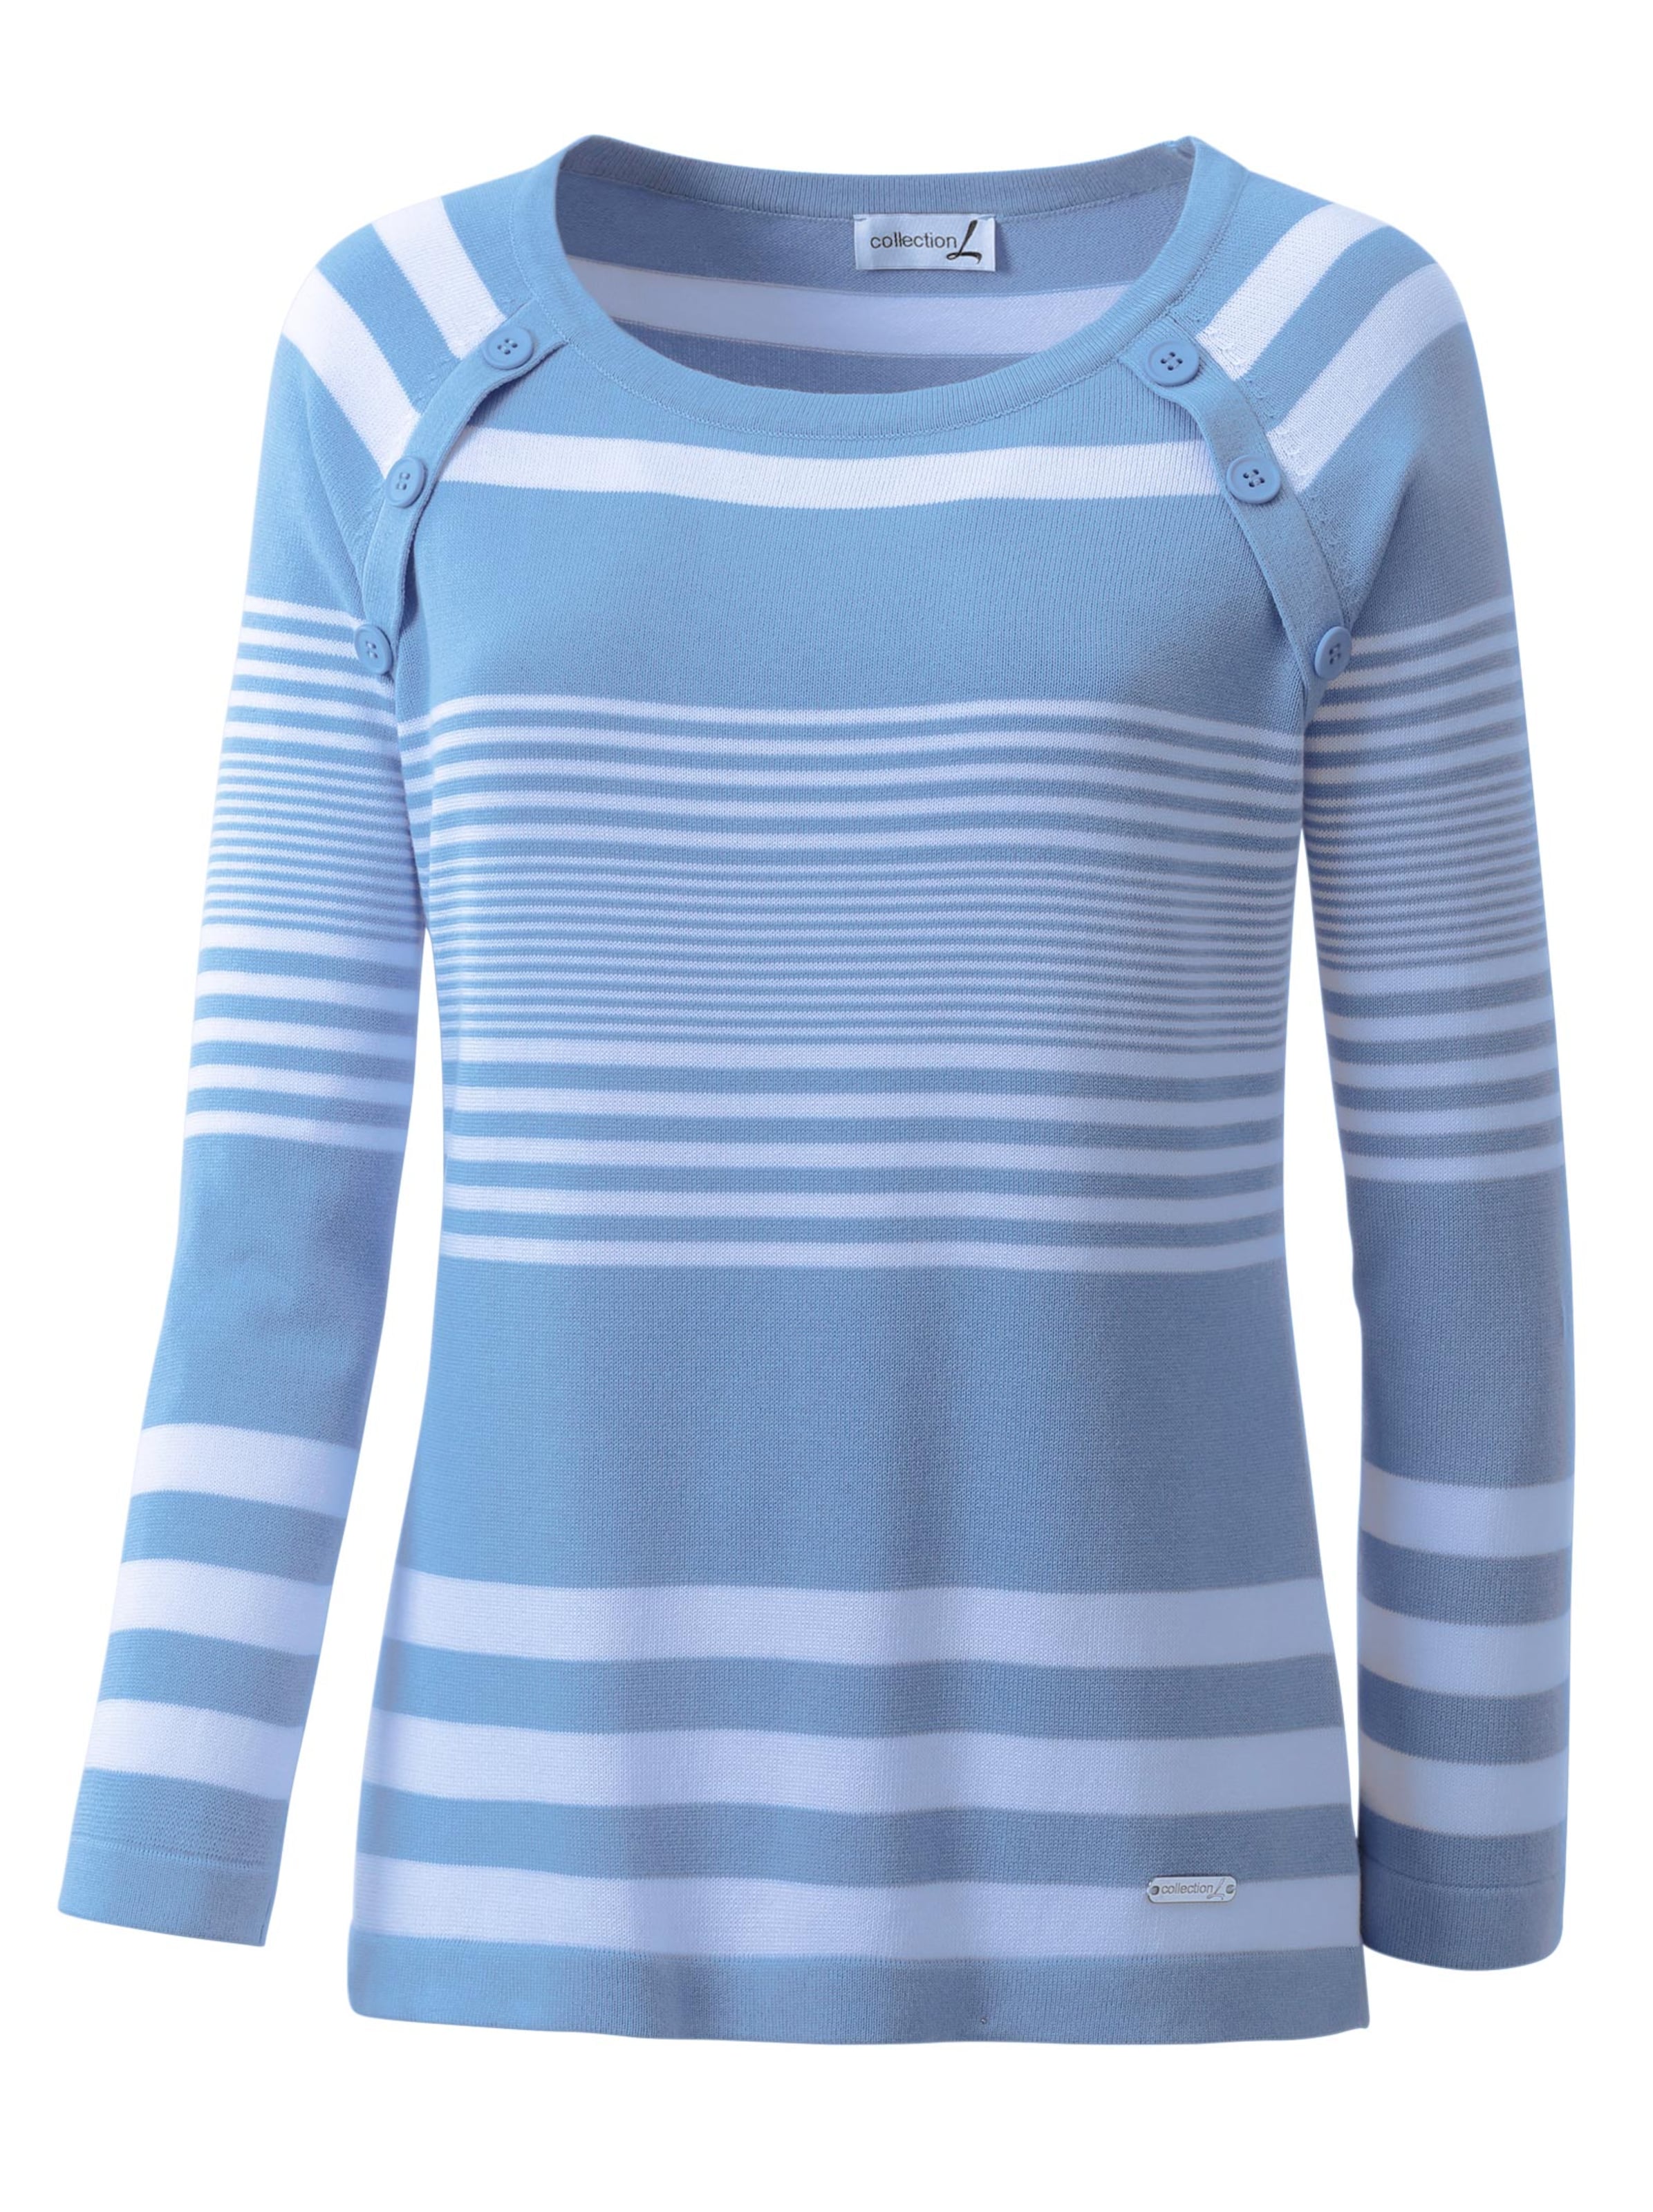 Damenmode Pullover Streifenpullover in hellblau-weiß-gestreift 